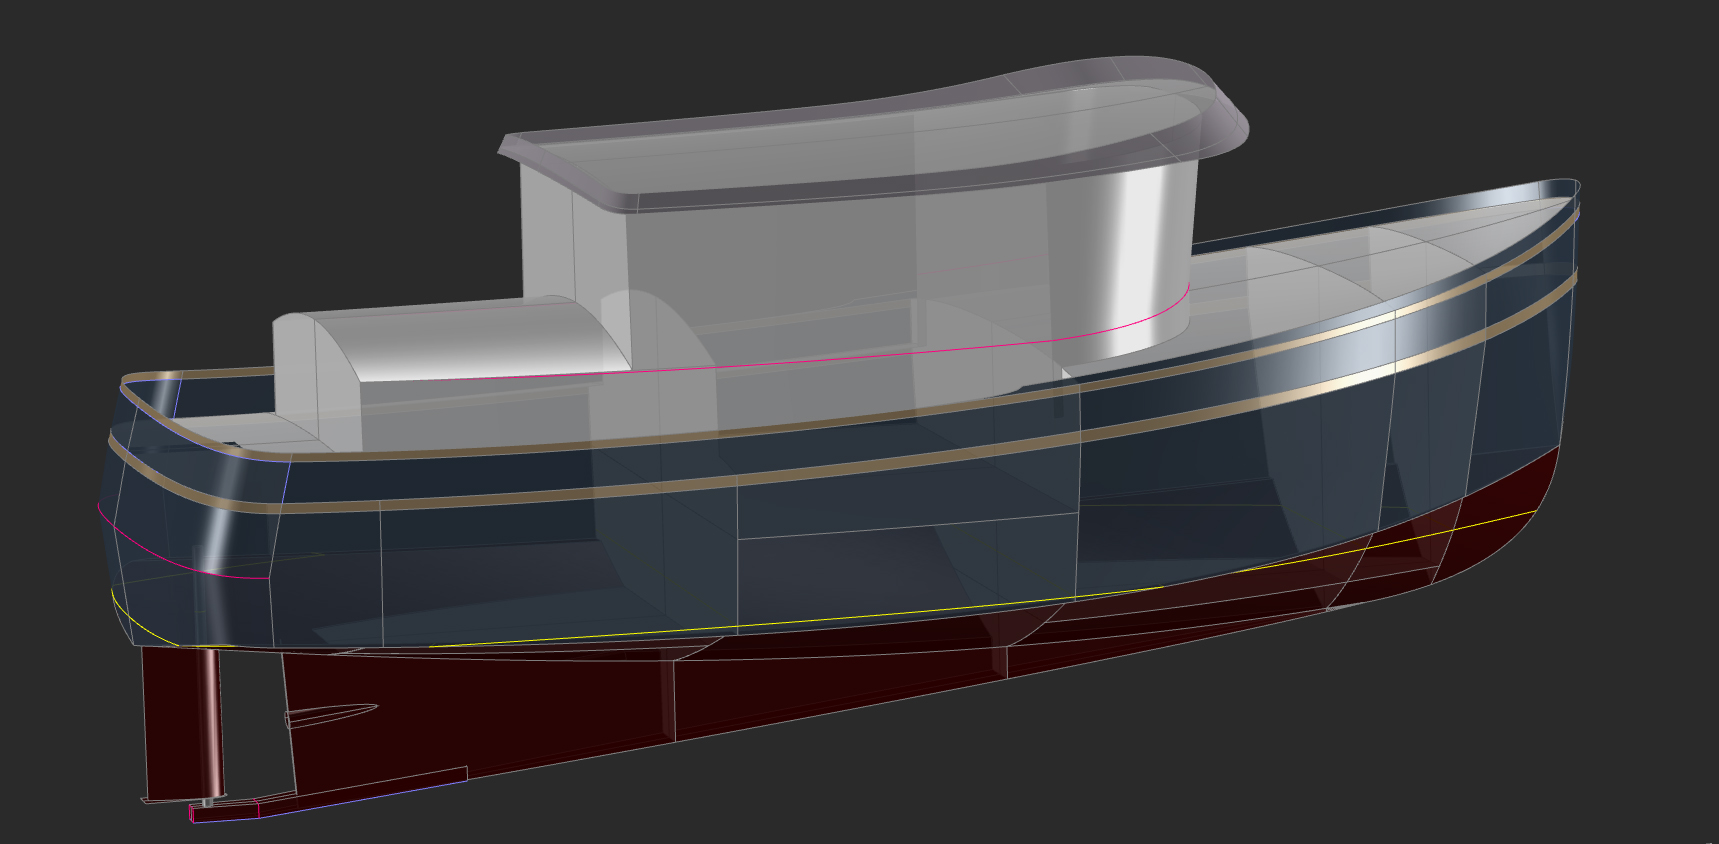 36' Fast Trawler Yacht - SKIMMER - Kasten Marine Design, Inc.